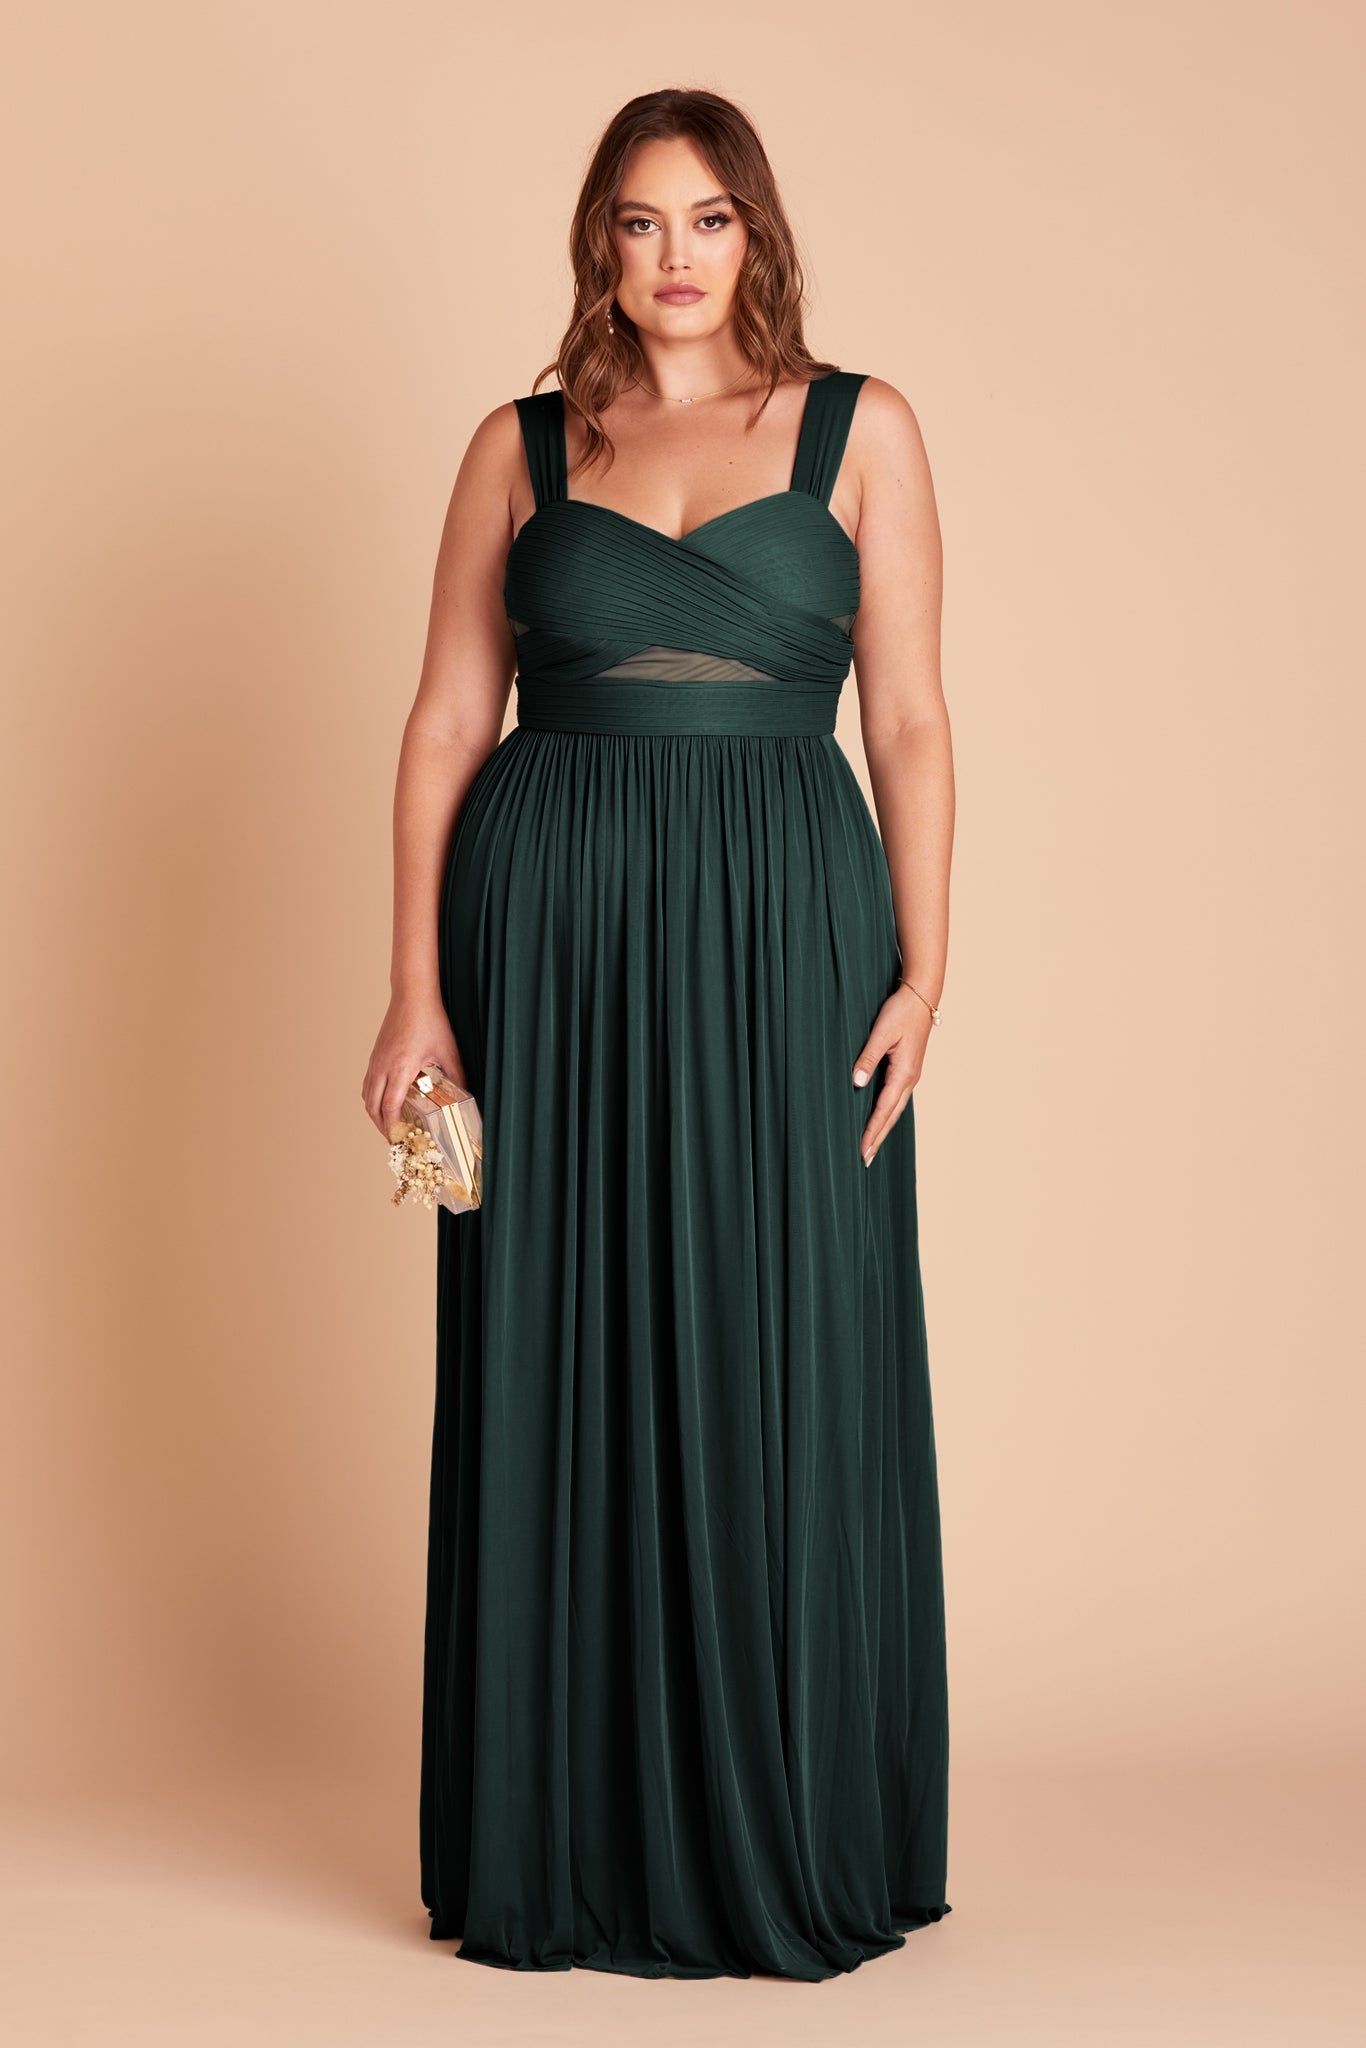 Emerald Elsye Dress by Birdy Grey